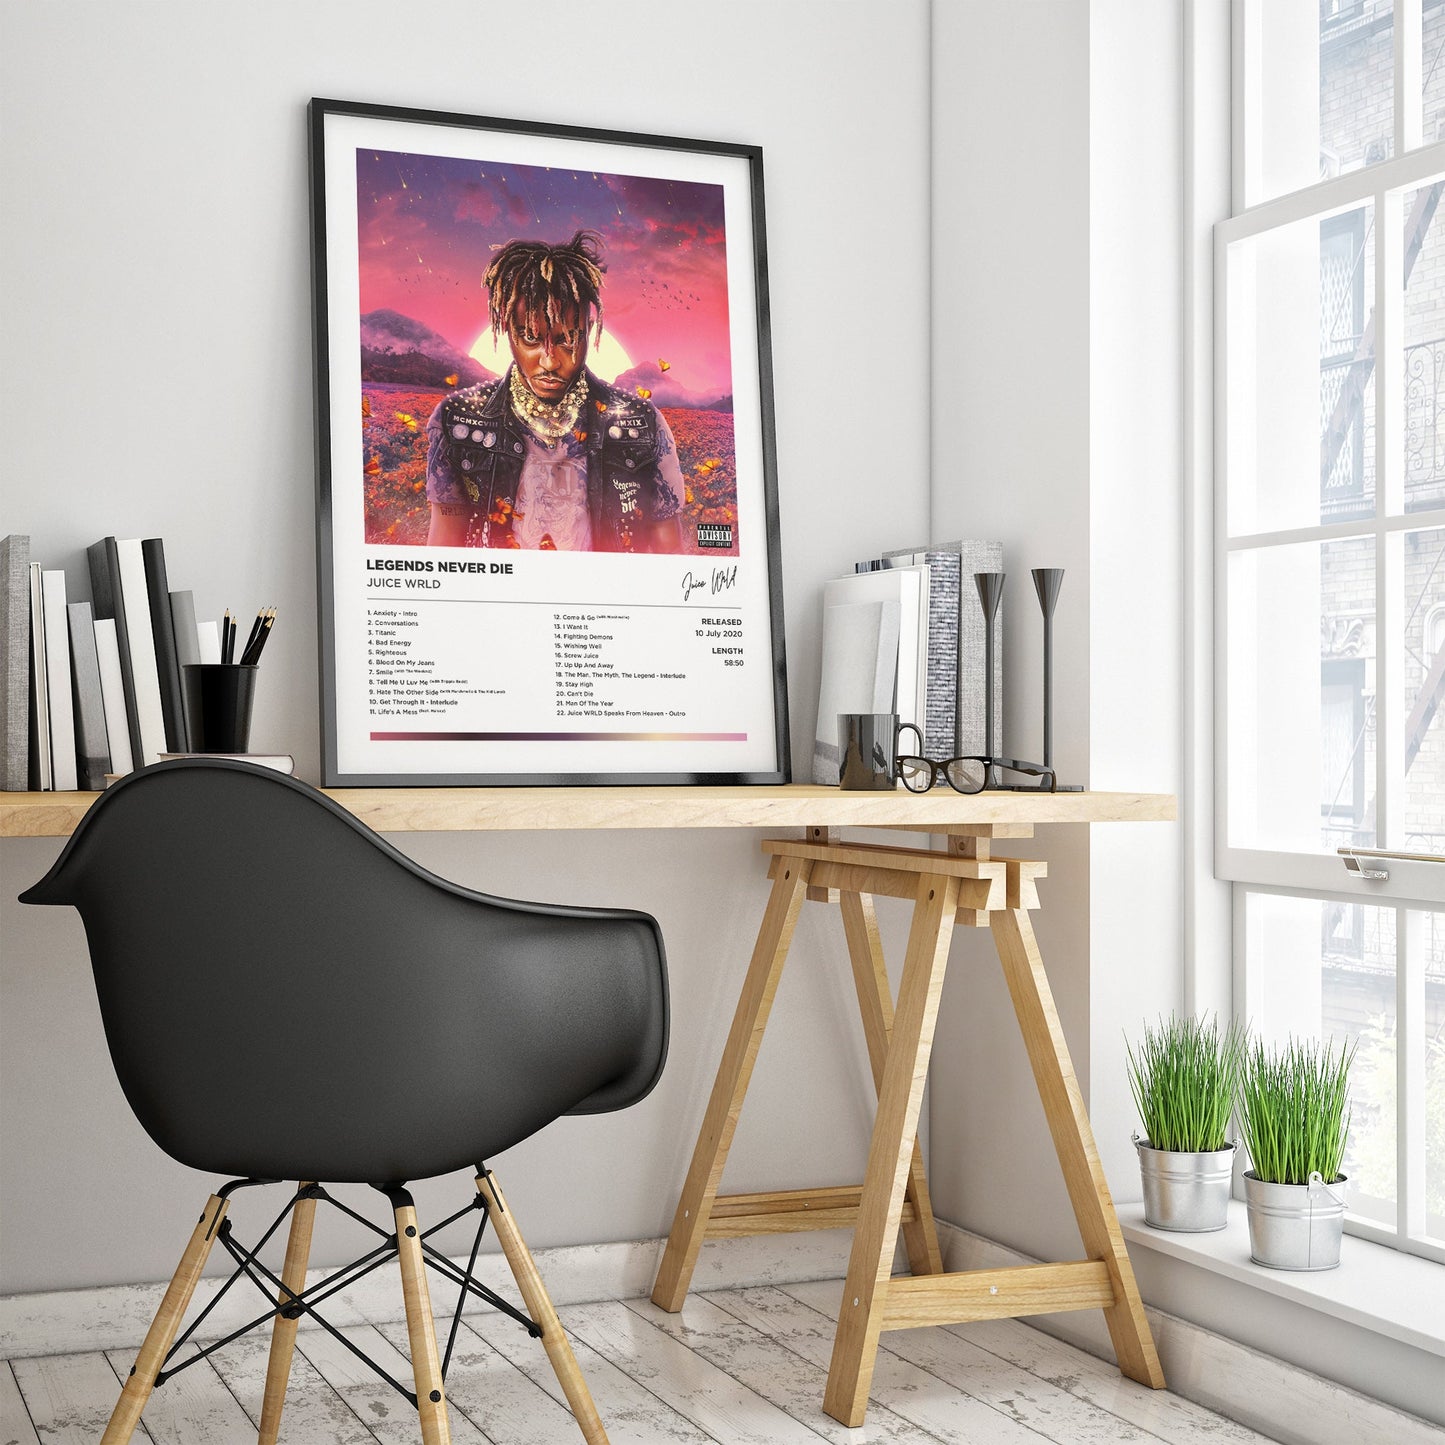 Juice WRLD - Legends Never Die Framed Poster Print | Polaroid Style | Album Cover Artwork